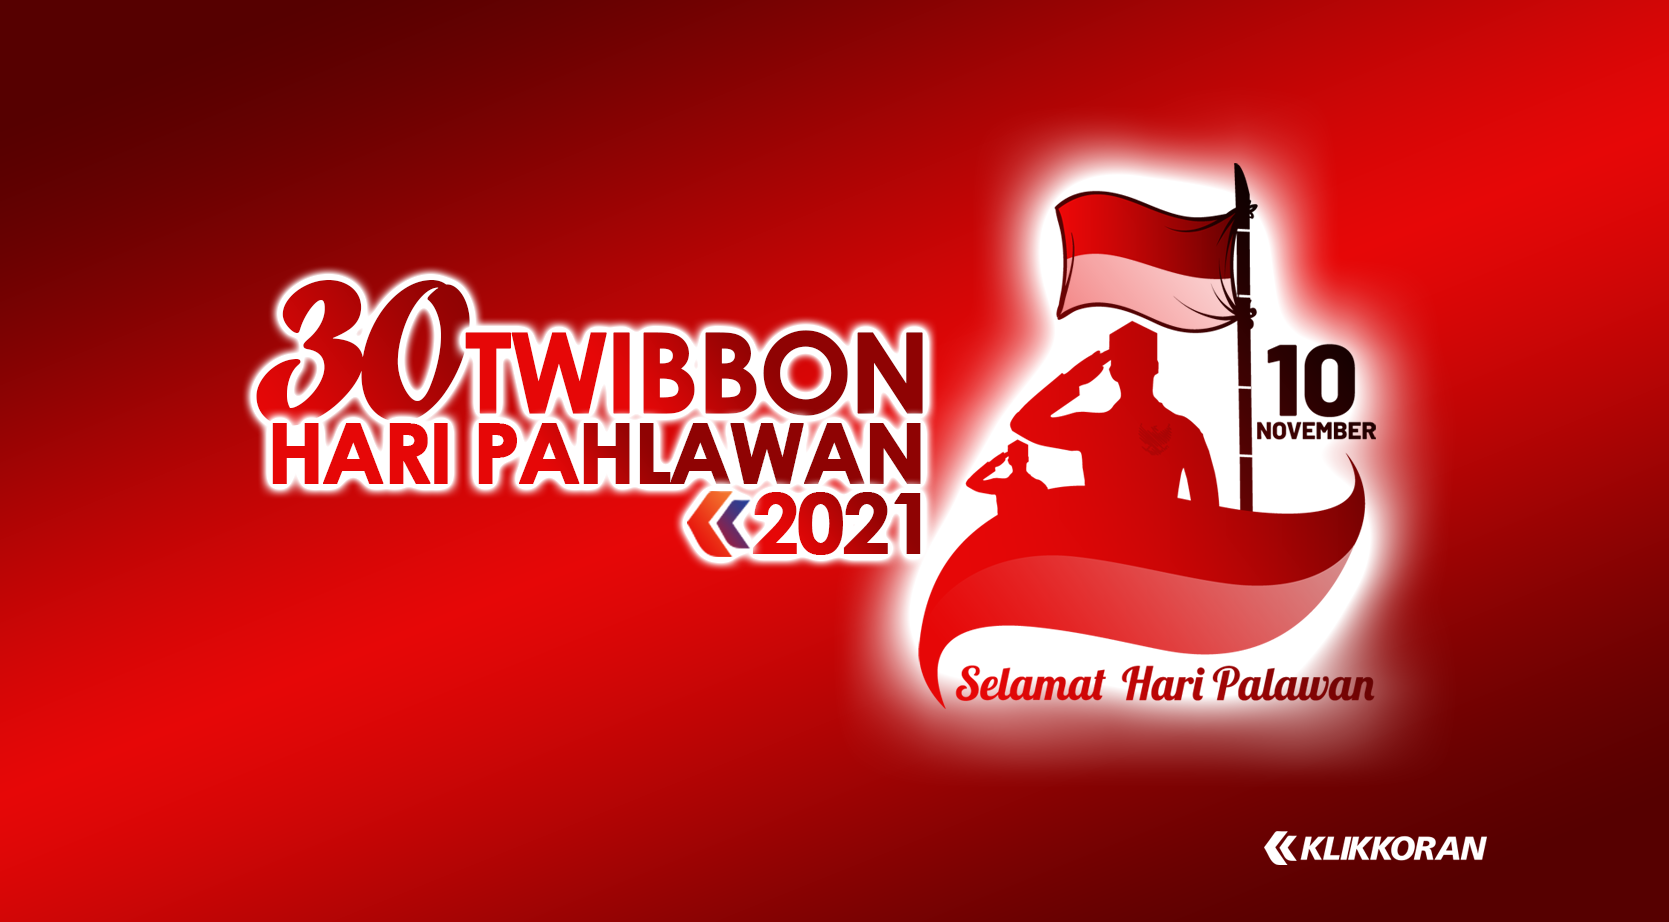 19 Twibbonize Hari Pahlawan Nasional 2021, Frame Bingkai Foto Ucapan Selamat Pilihan Terbaik. (Foto: Klikkoran.com)